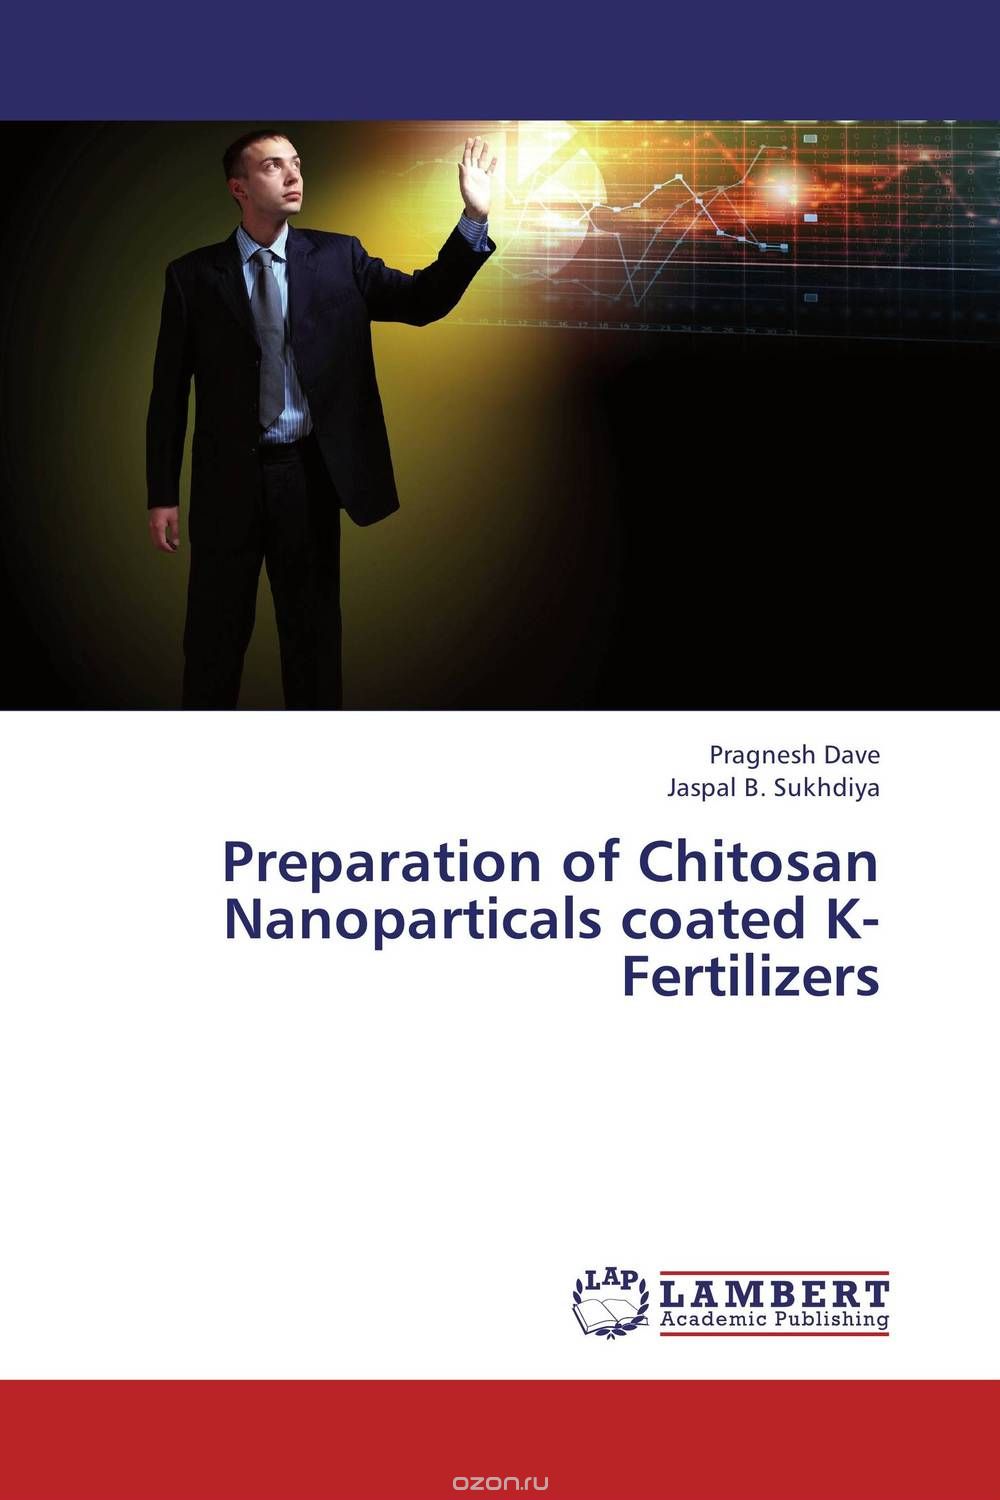 Скачать книгу "Preparation of Chitosan Nanoparticals coated K- Fertilizers"